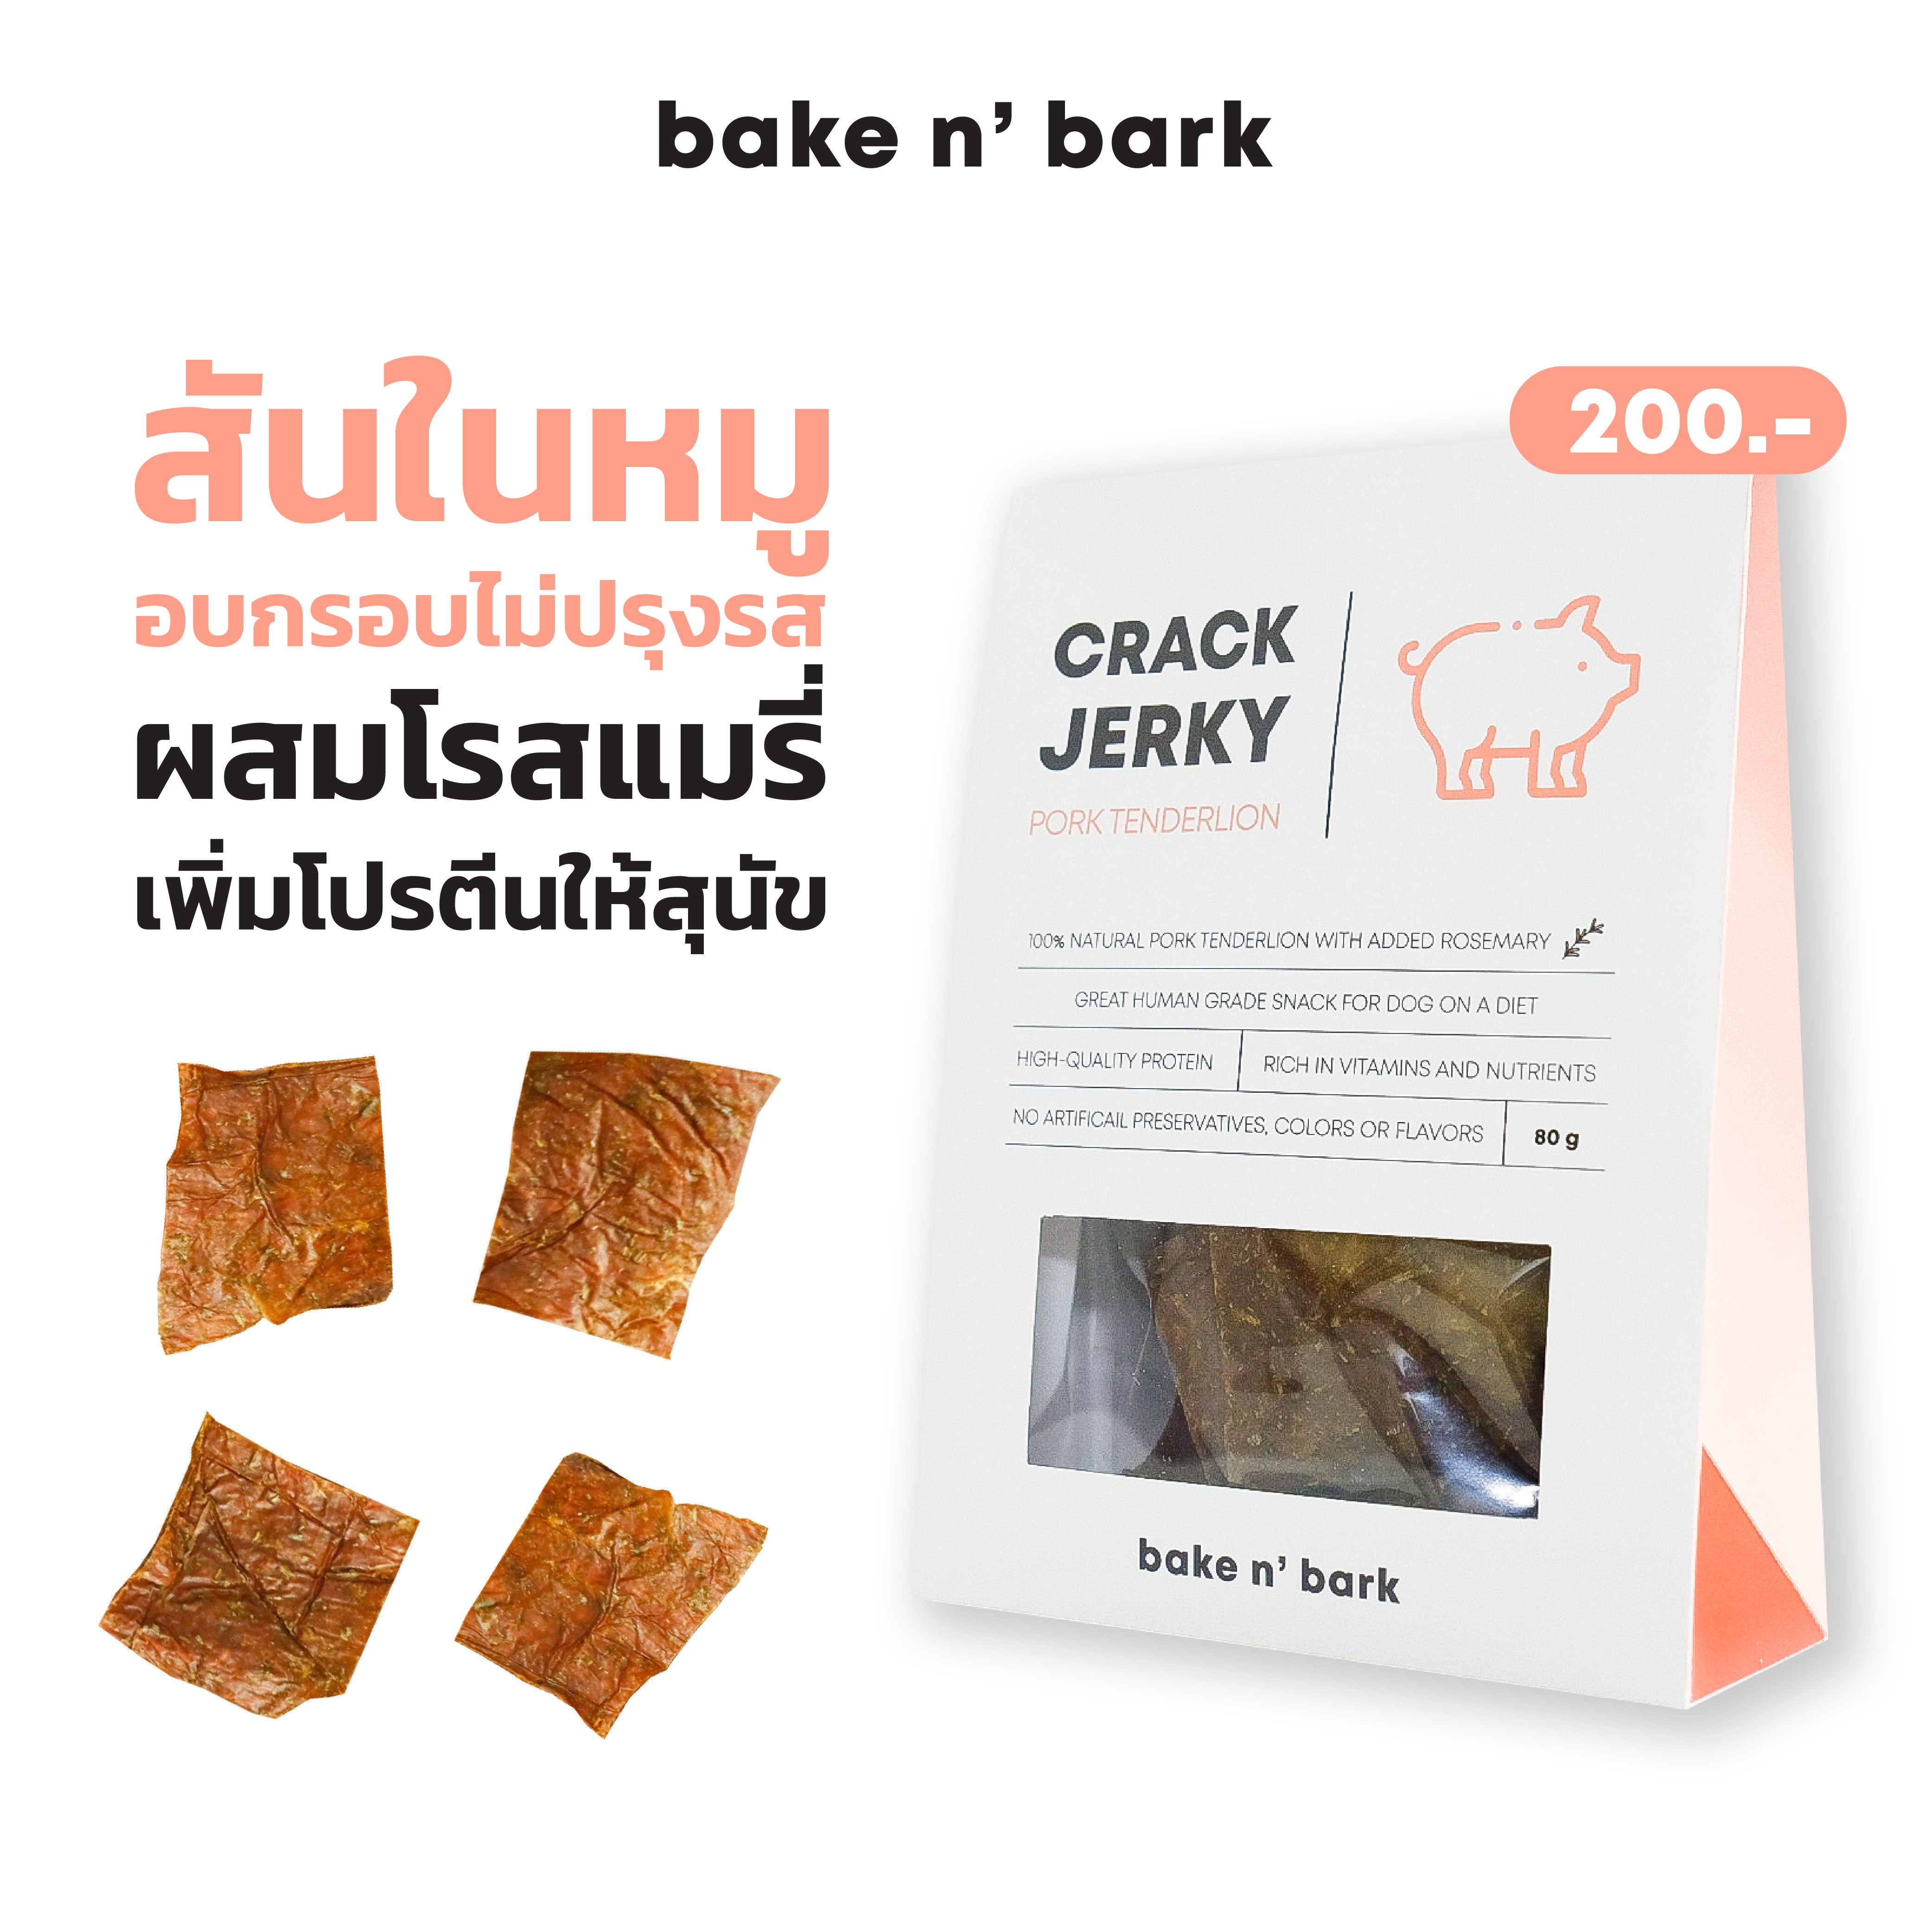 bakenbark | Cracky Jerky Pork Tenderloin ขนมสุนัข สันในหมูอบกรอบไม่ปรุงรส ผสมโรสแมรี่ เพิ่มโปรตีนให้น้องหมา 200 บาท